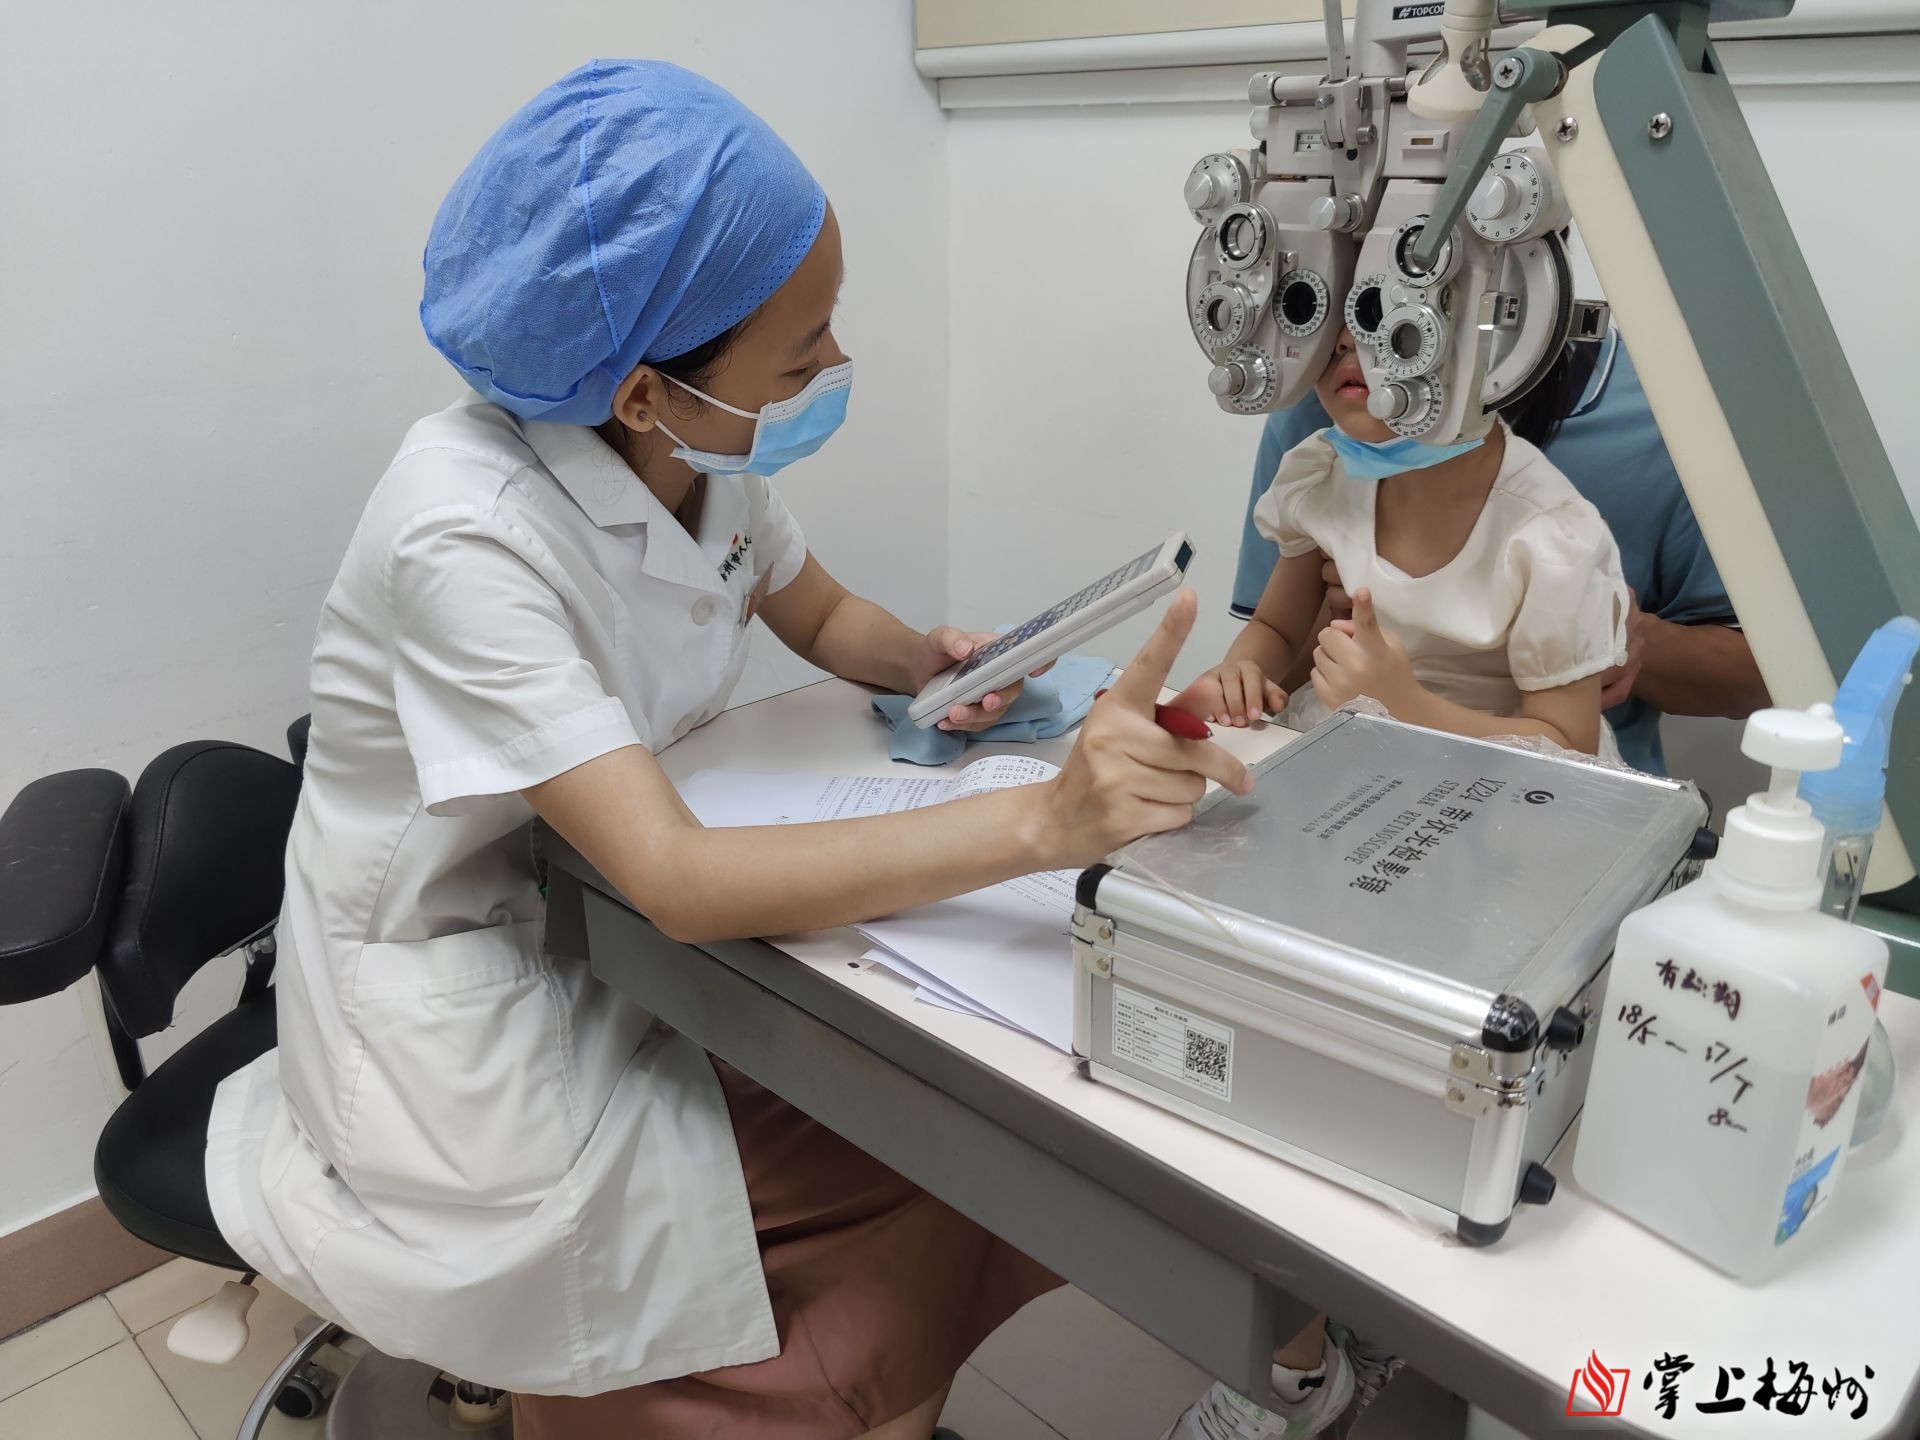 近日,记者走访了梅州市人民医院视光学中心及梅江区深梅眼科医院发现